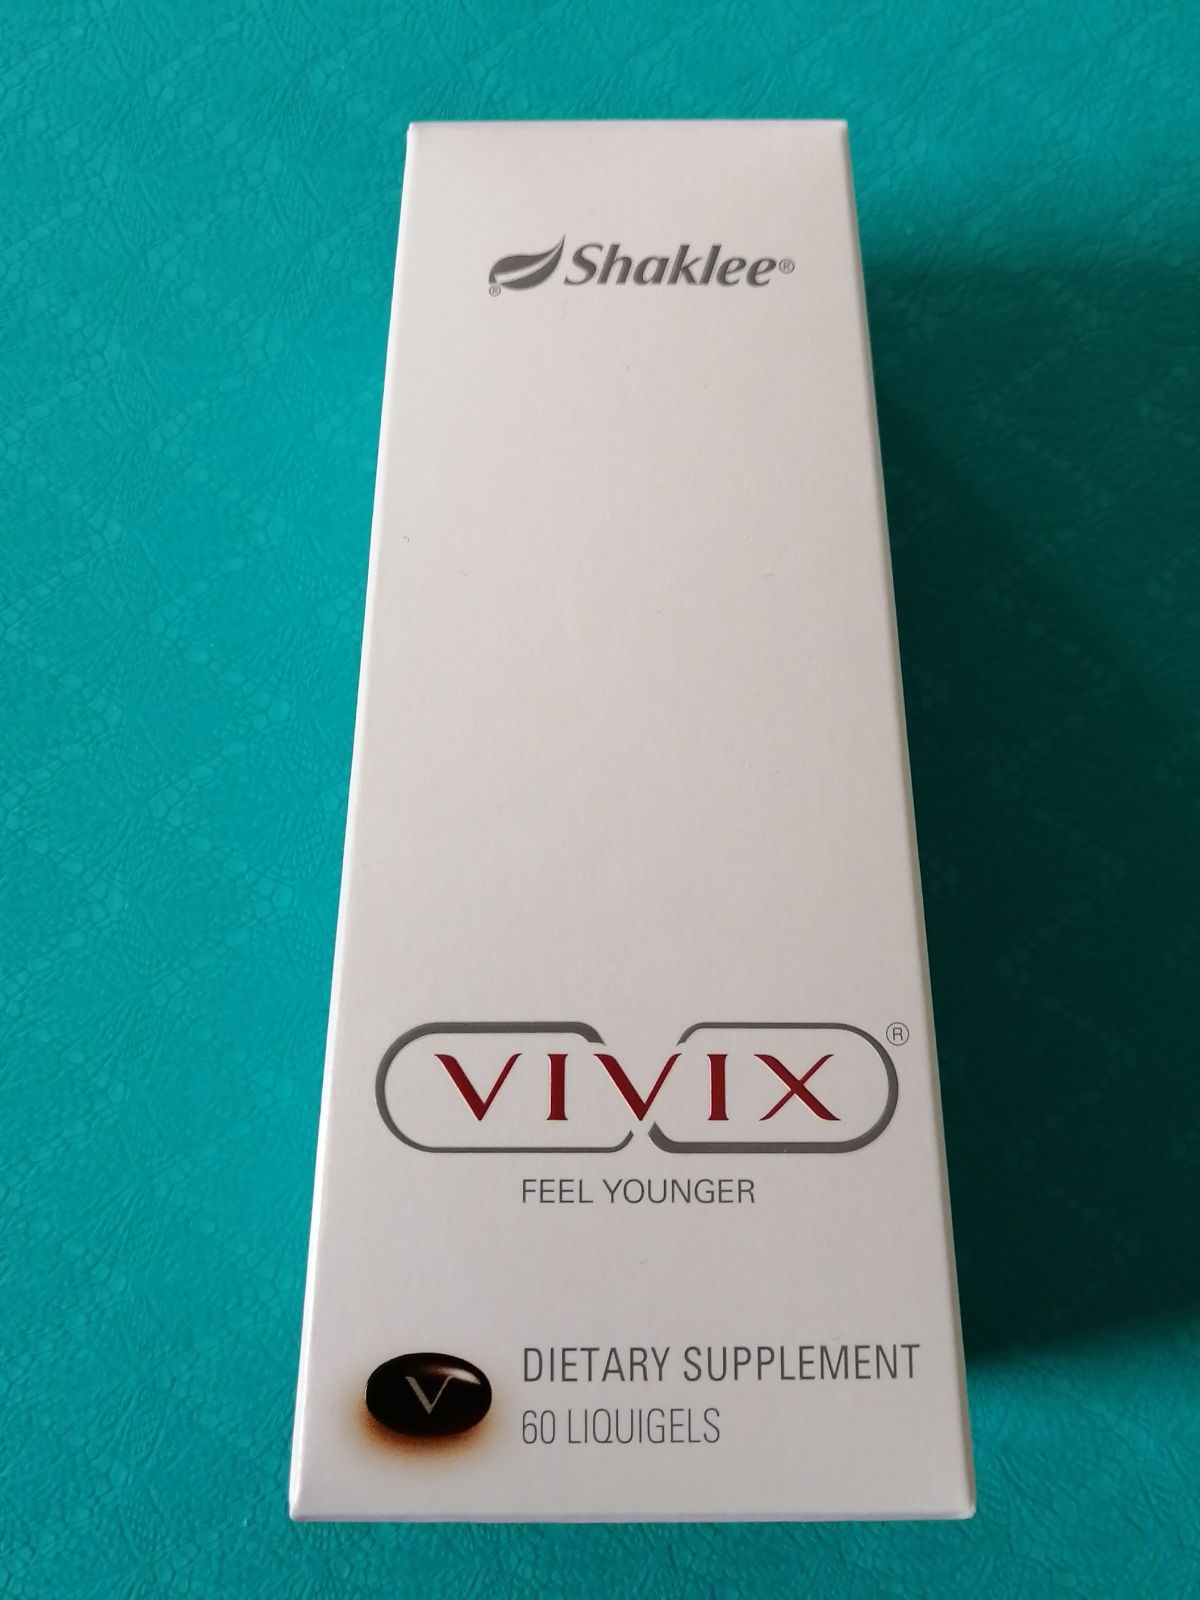 シャクリー VIVIX カプセル 60粒プロテインベイクド レスベラトロール ...